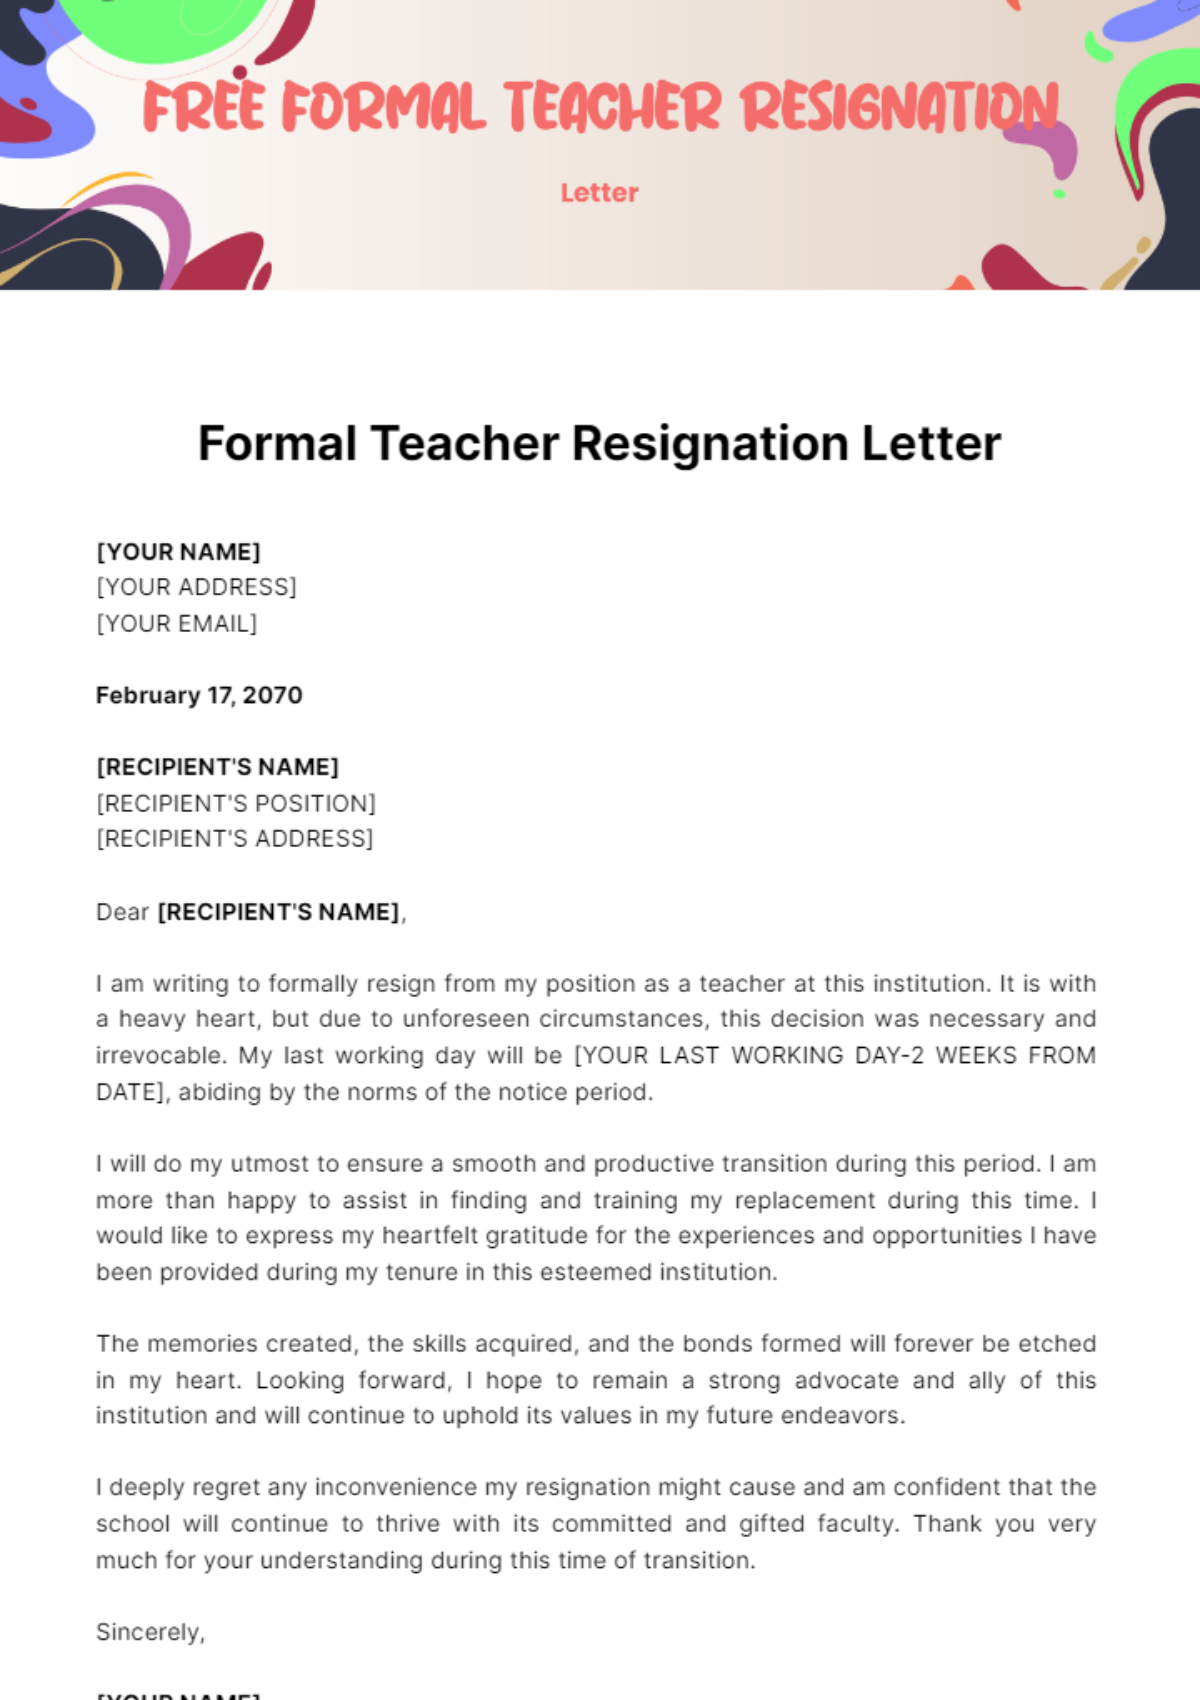 Free Formal Teacher Resignation Letter Template